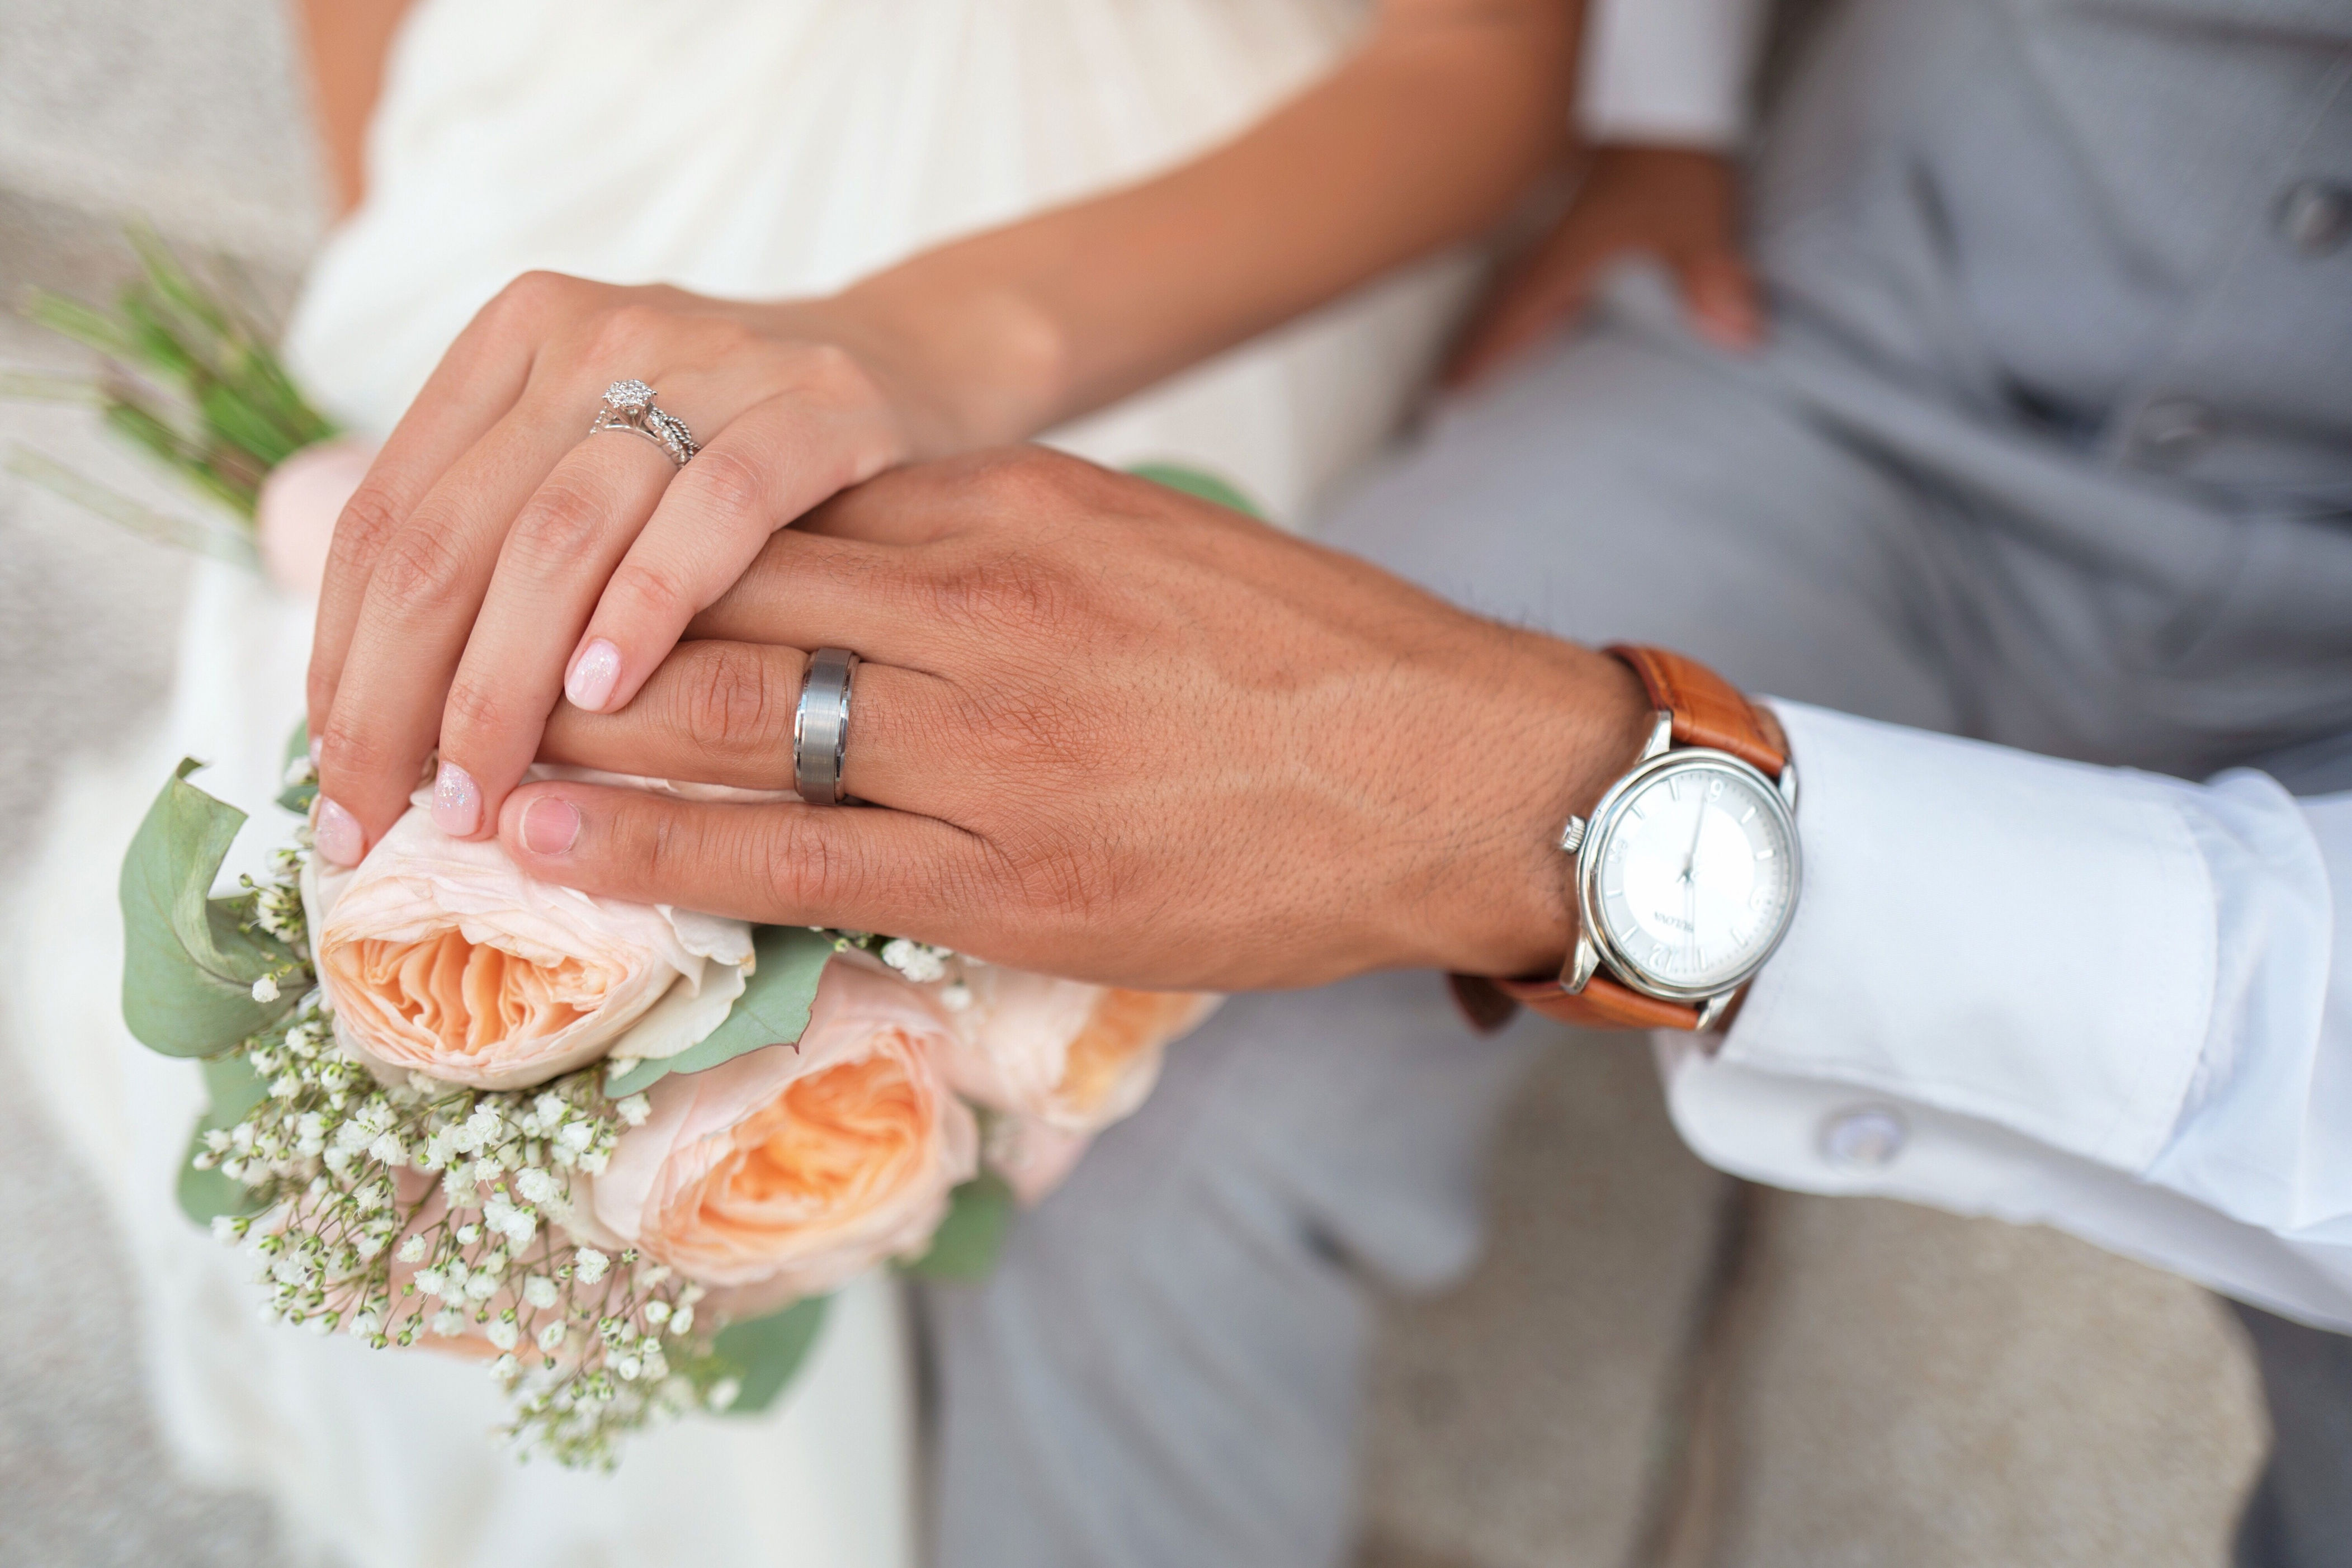 acuerdos de unión civil poco a poco desplazan a matrimonios como la principal forma de casarse en el país